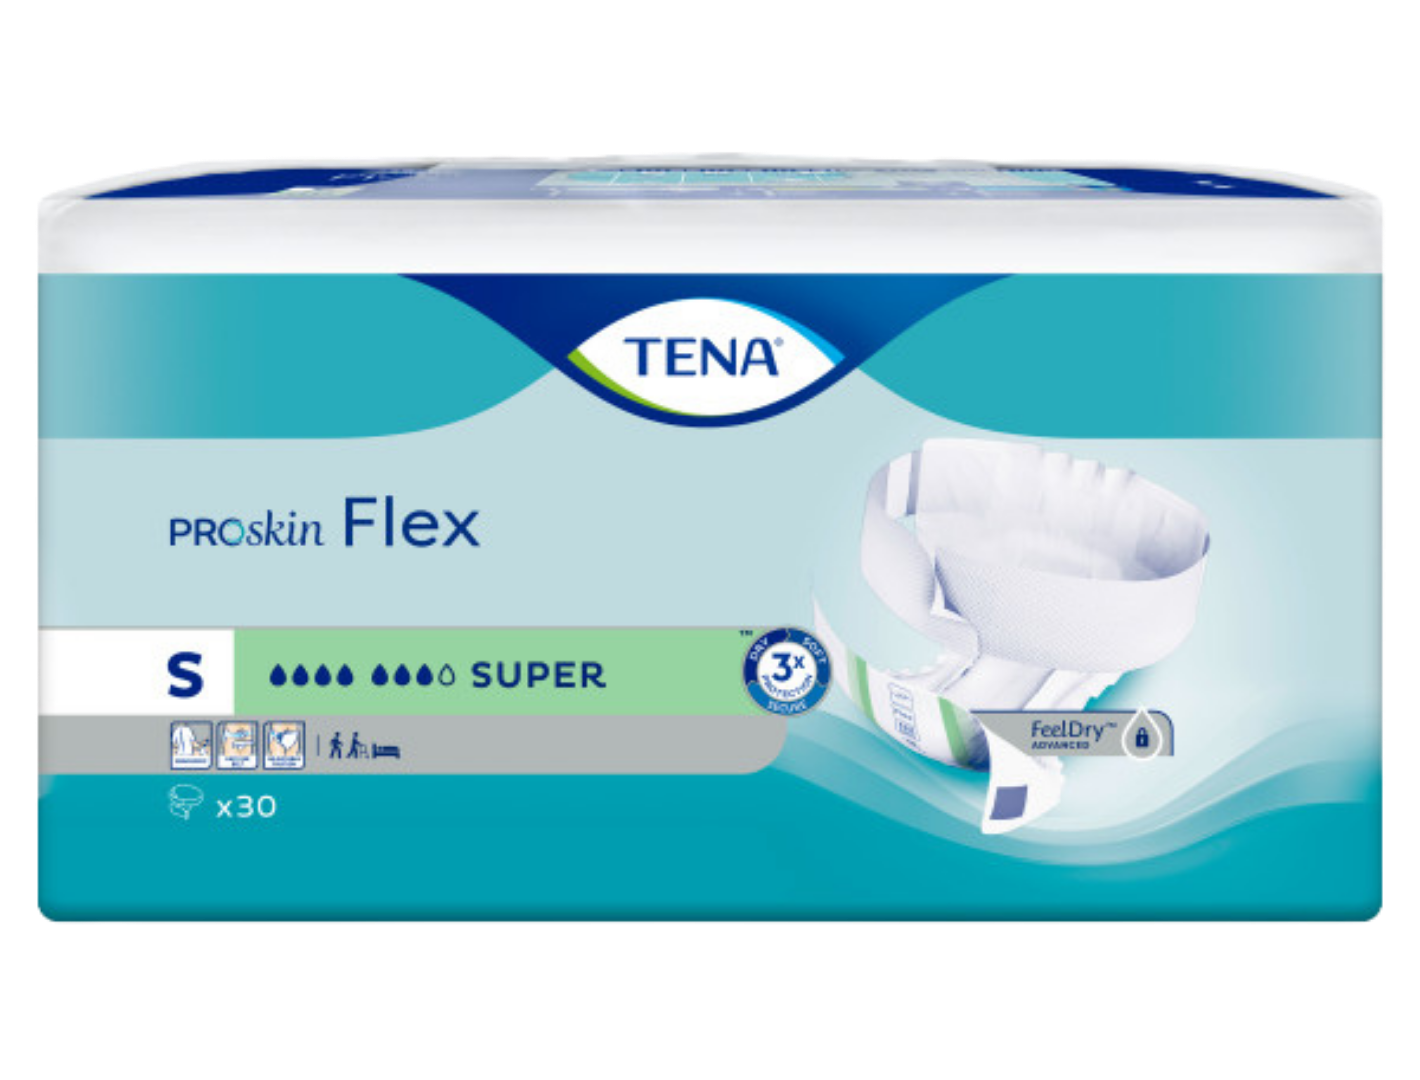 TENA Flex Super Briefs